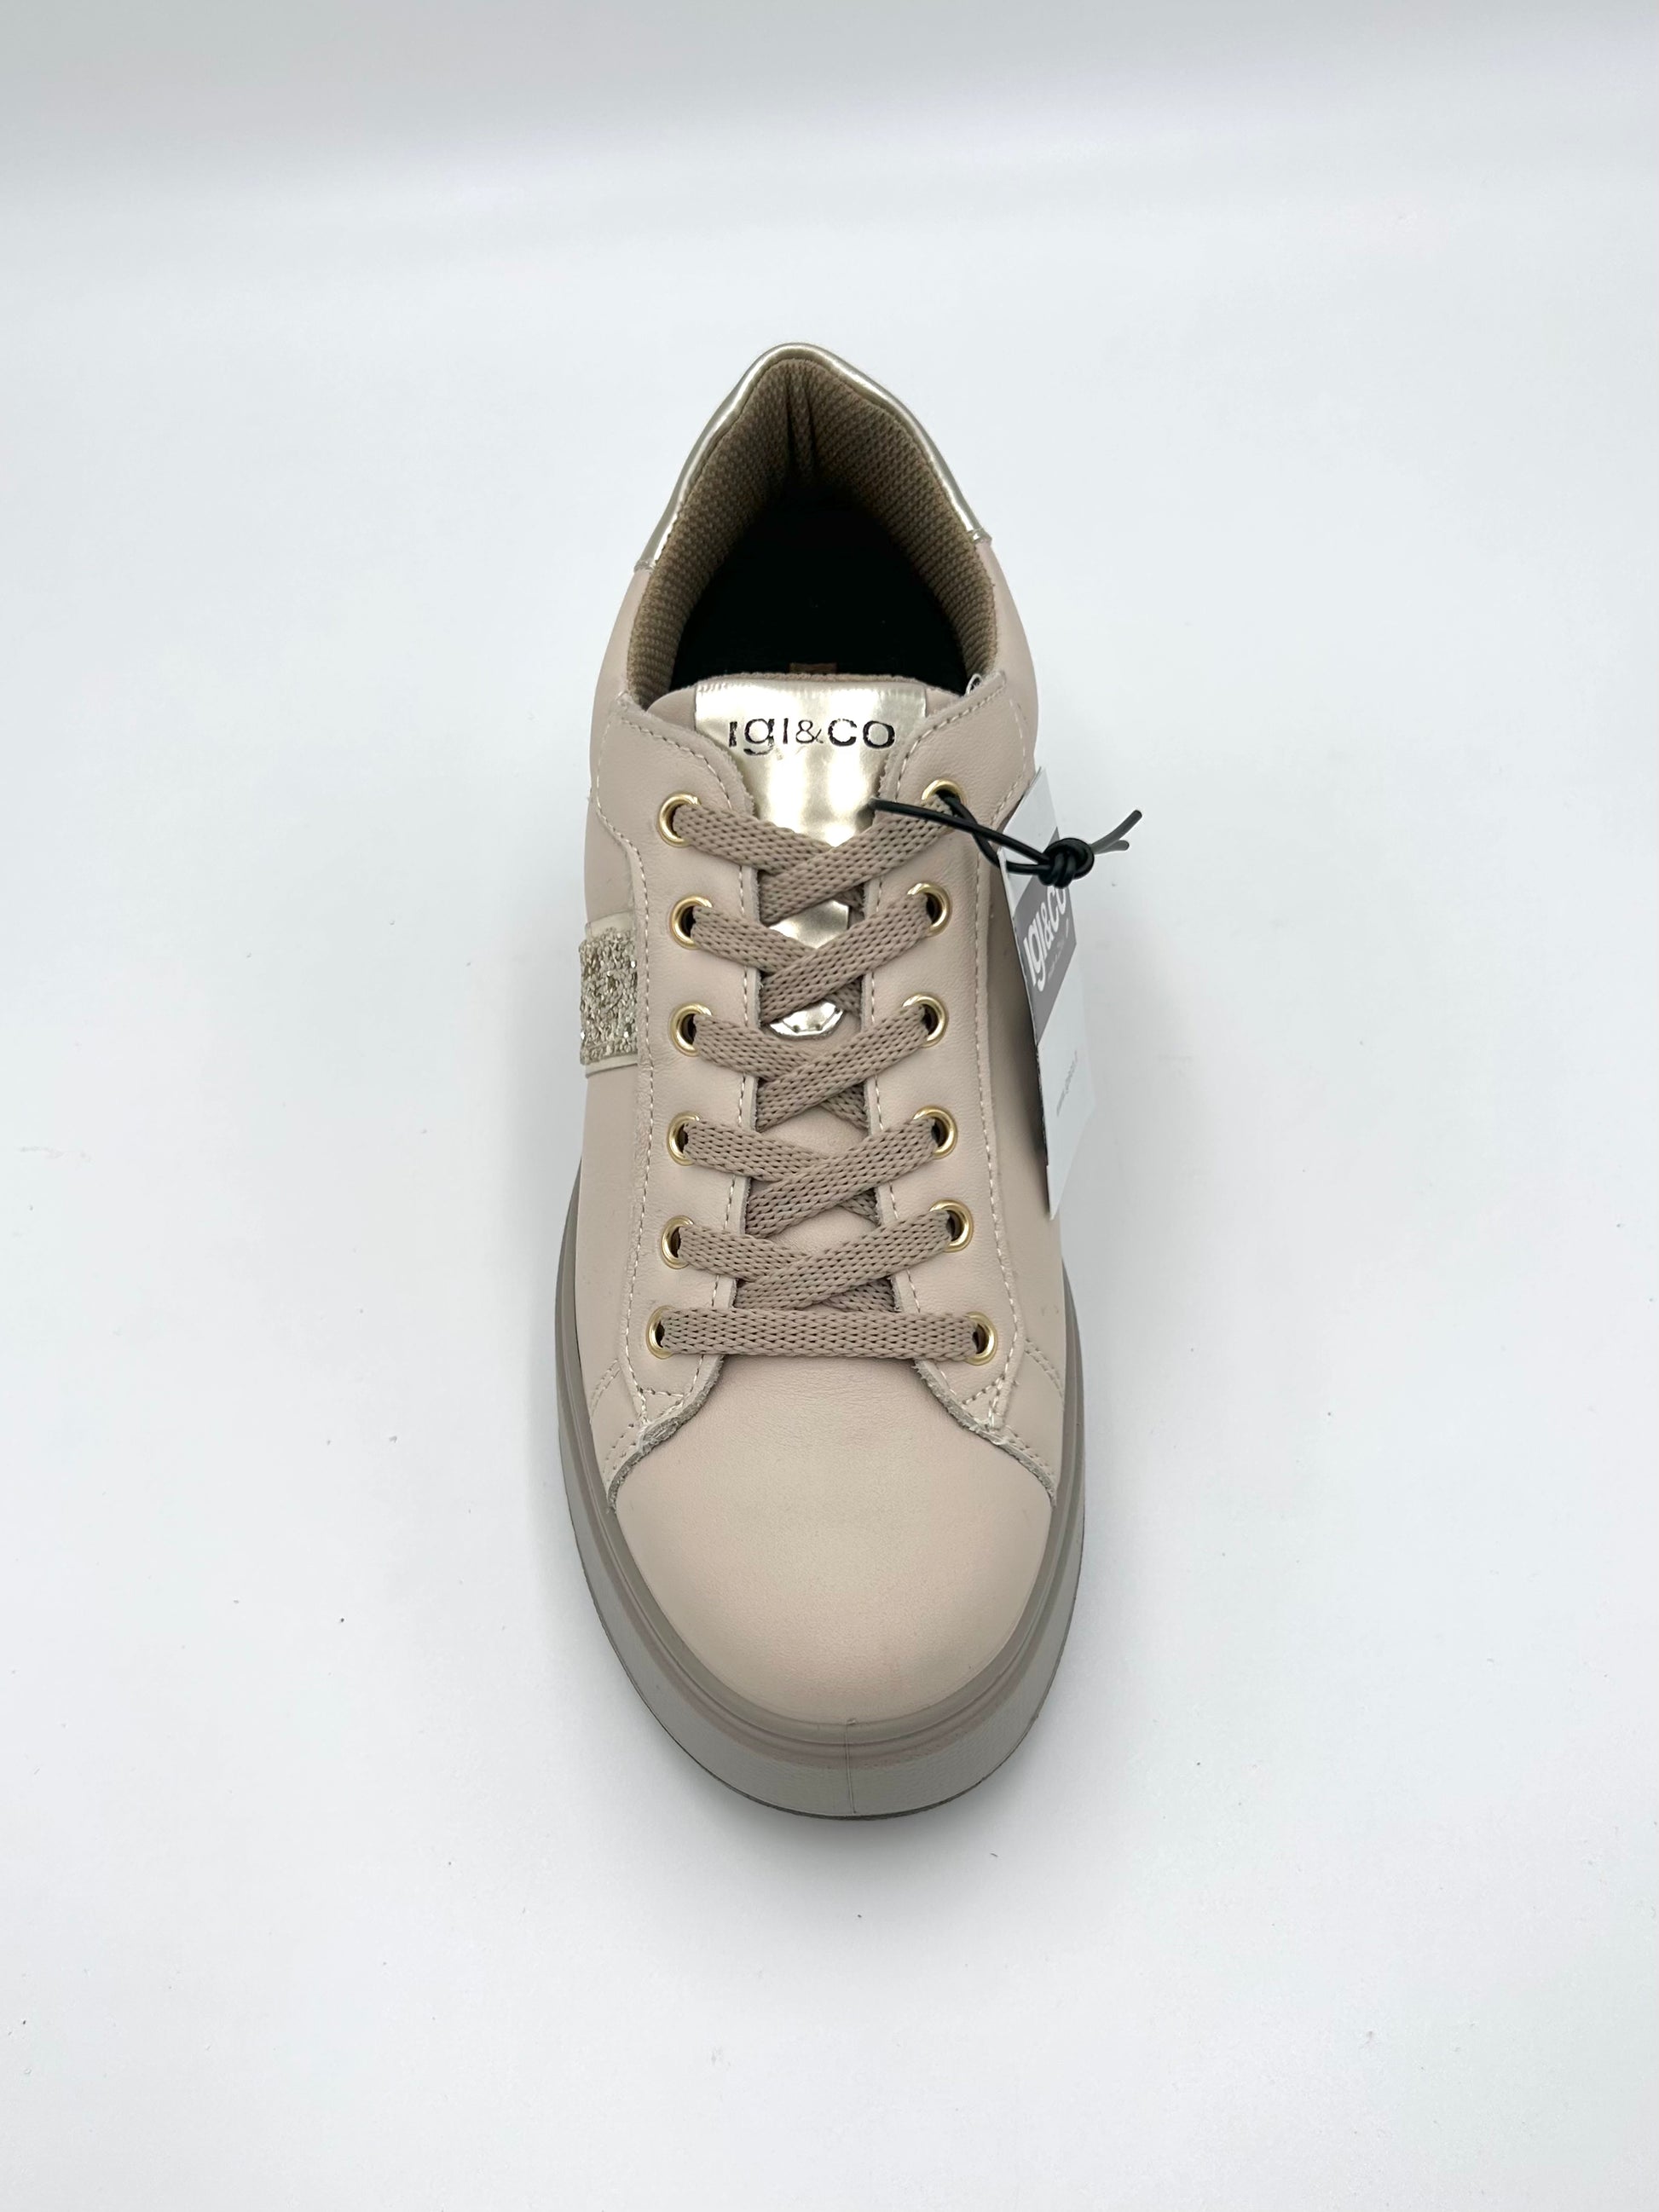 Igi&co Sneakers con zeppa - in pelle beige naturale - Igi&co